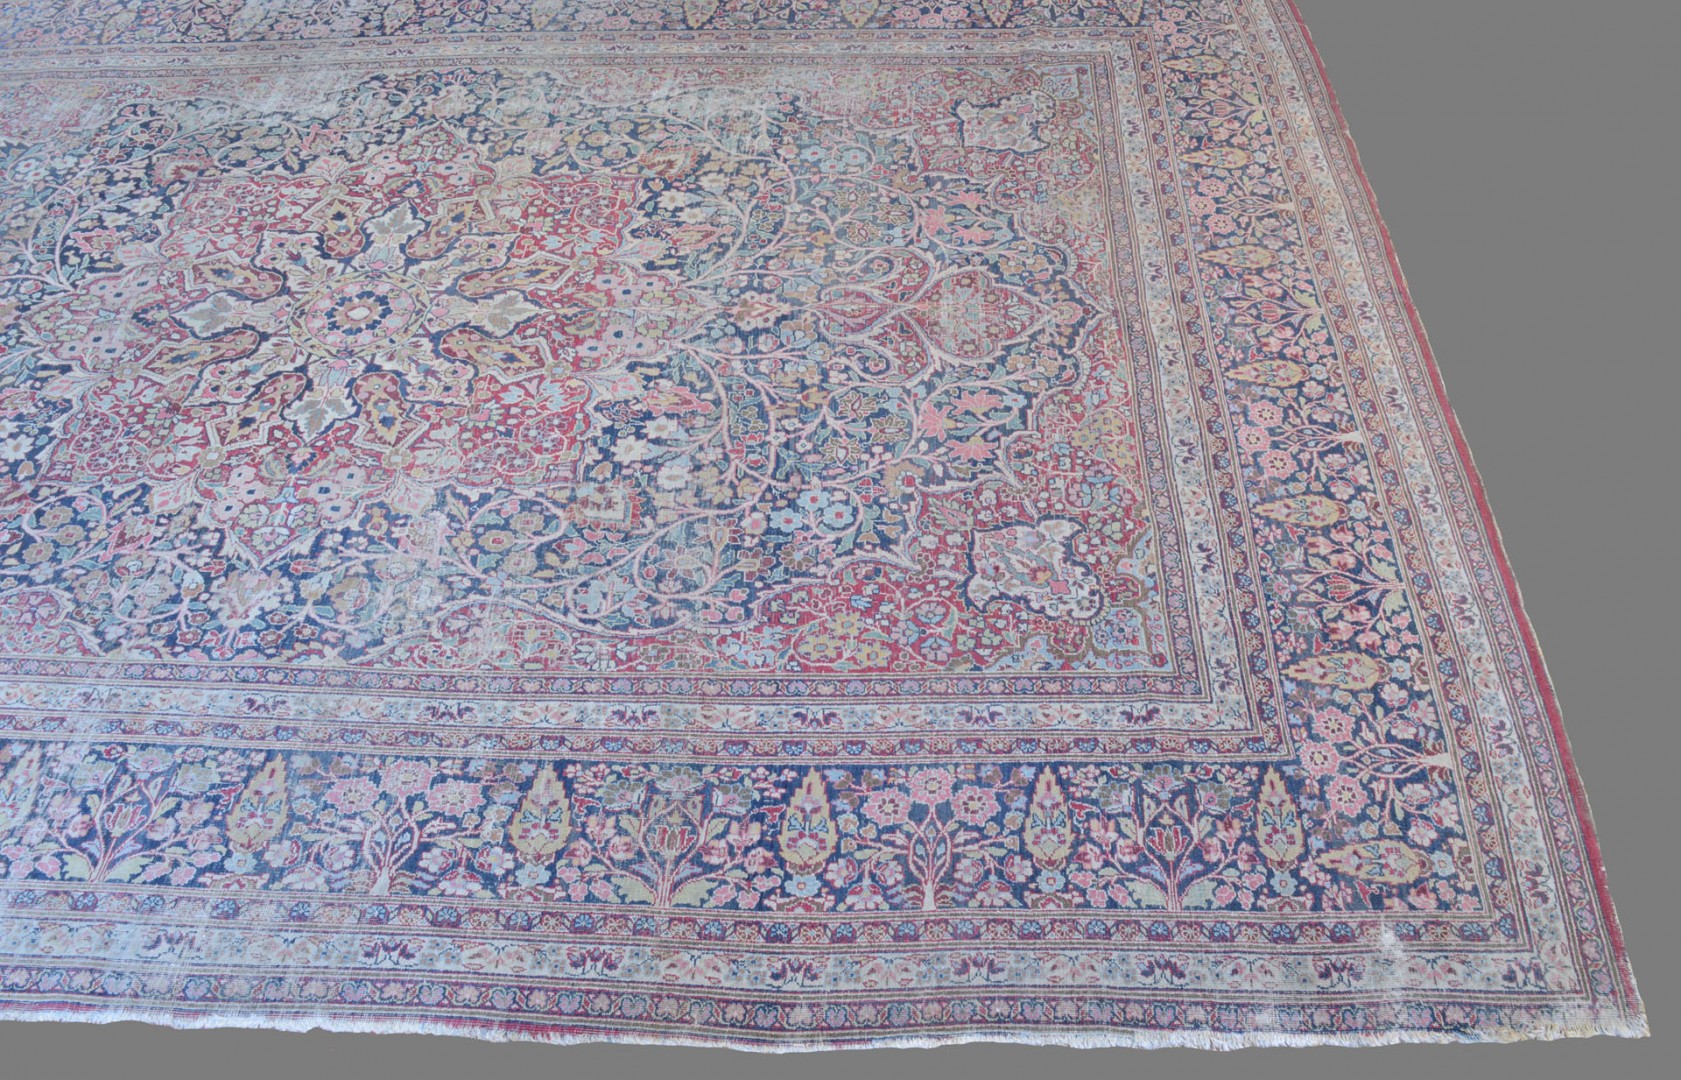 Lot 657: Antique Lavar Kerman Carpet, 14'6" x 10'